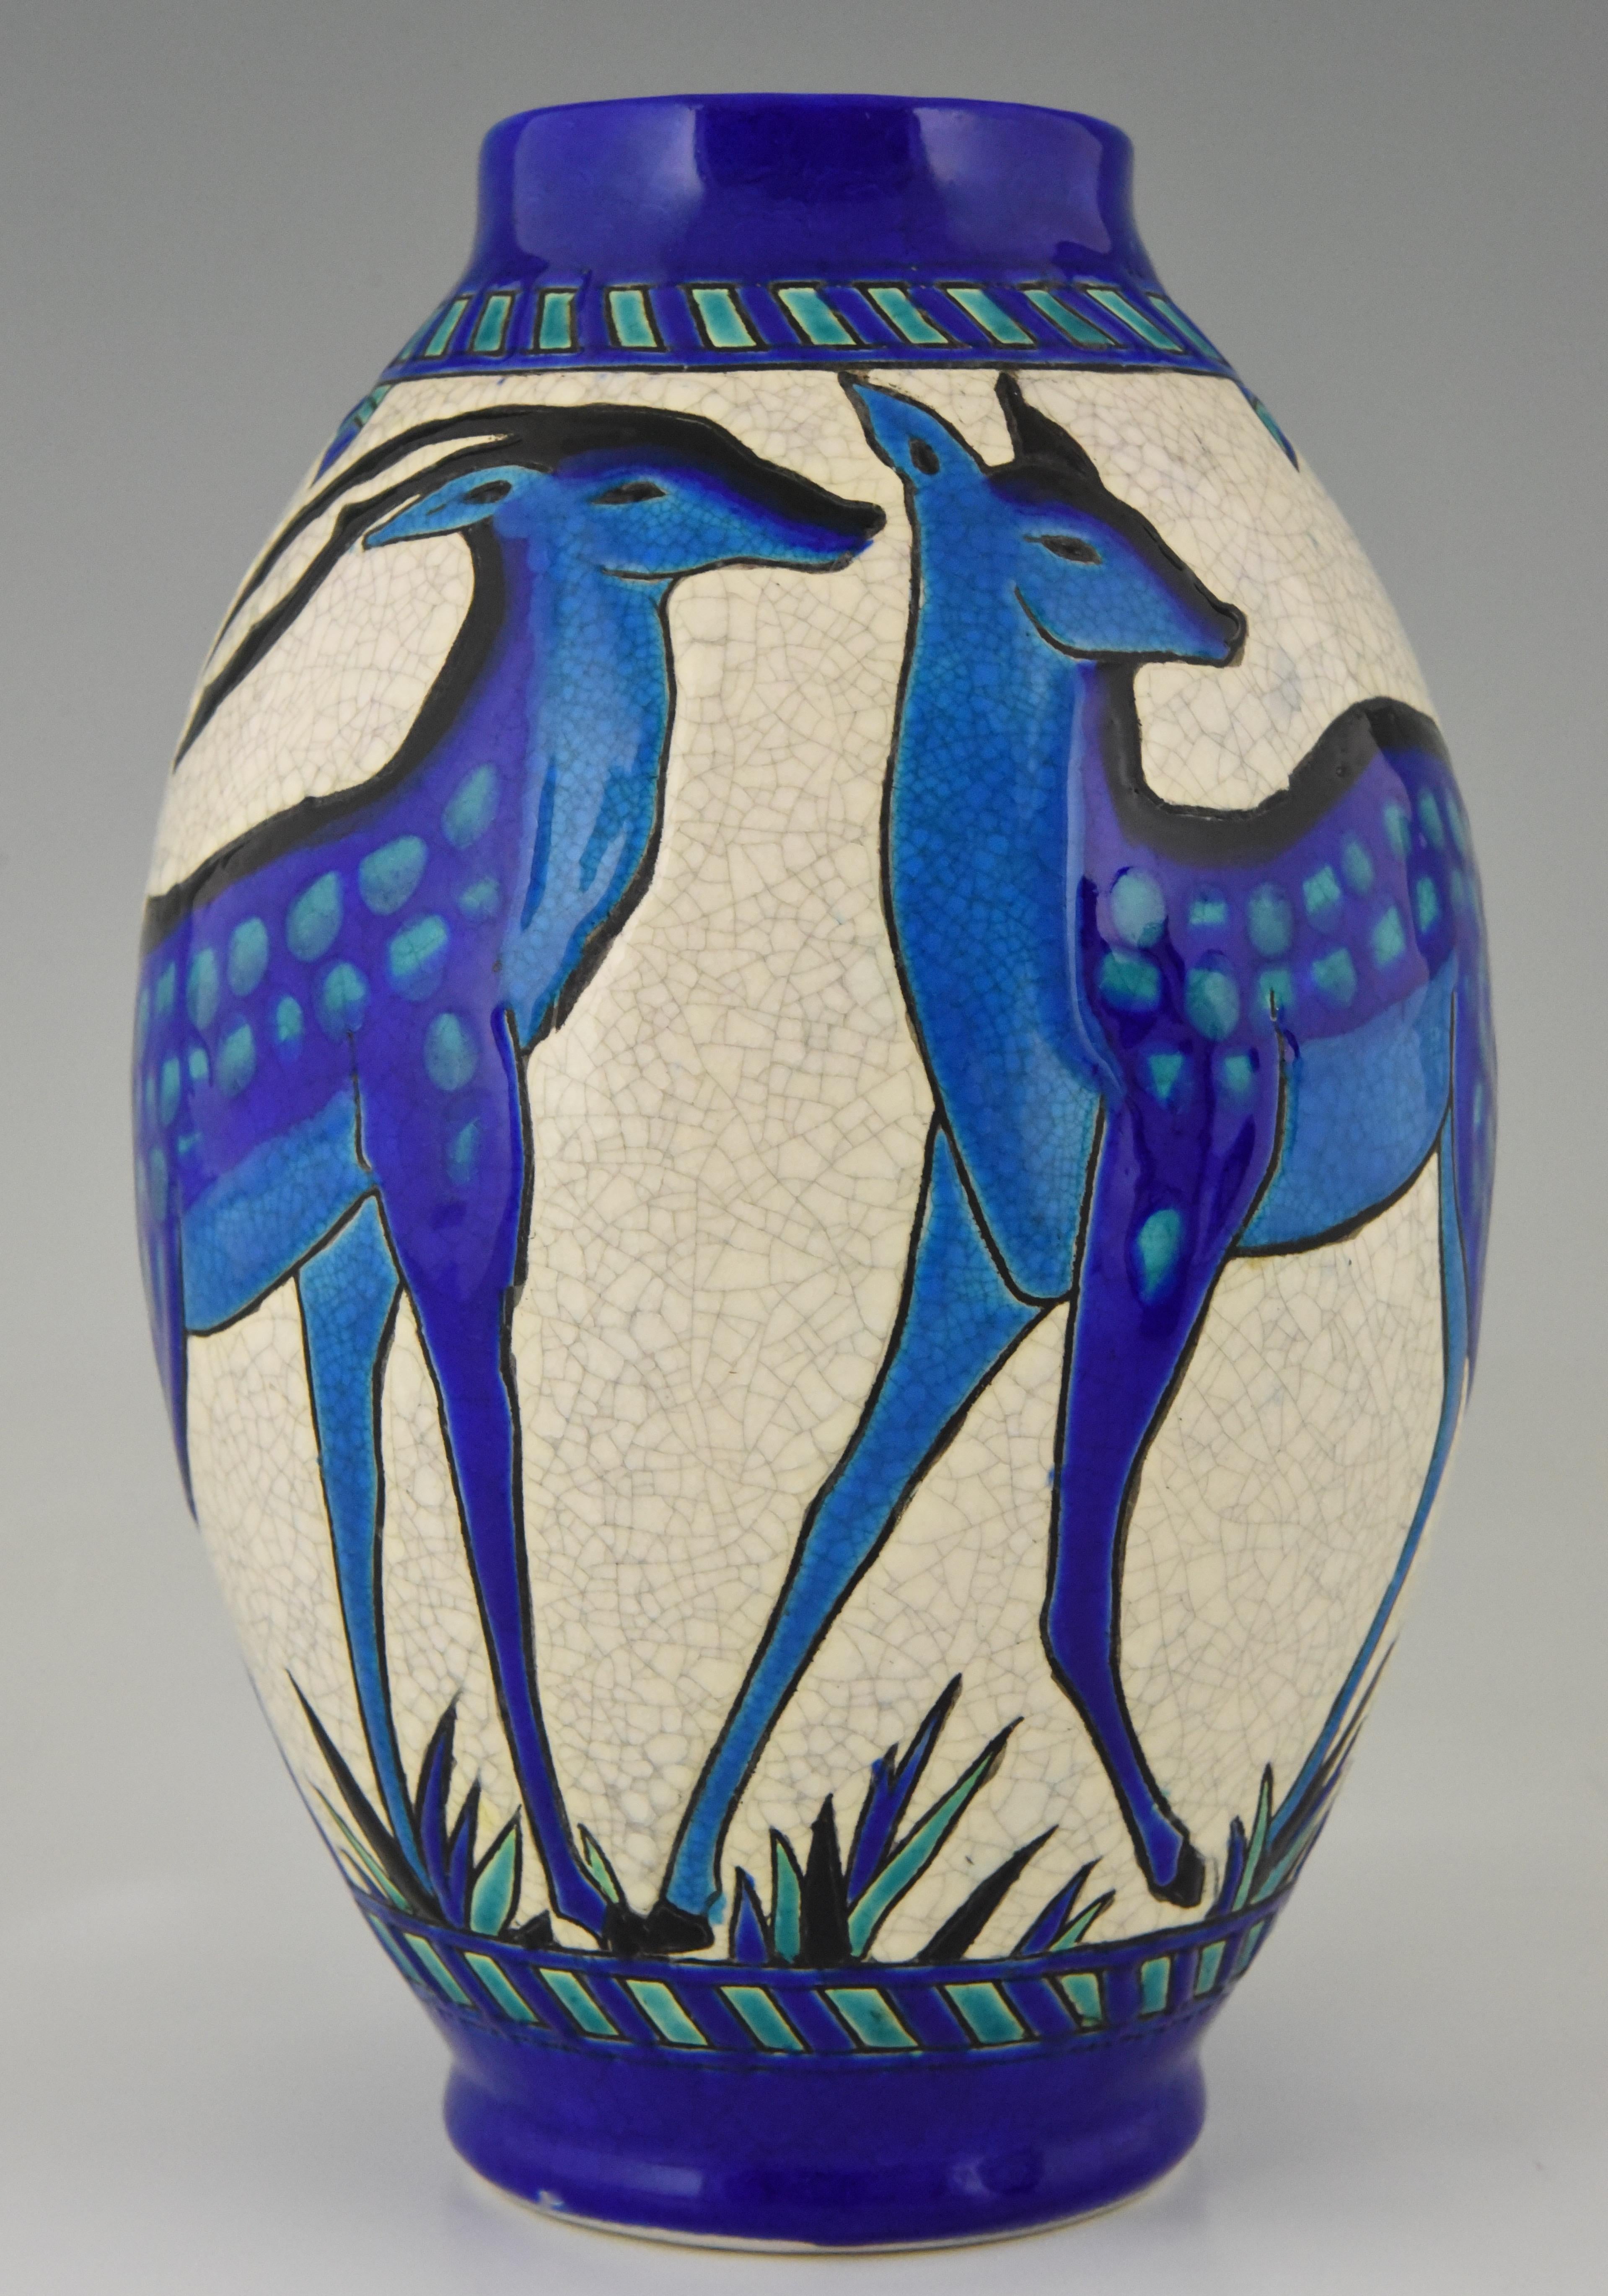 Art Deco Craquelé Ceramic Vases with Blue Deer Charles Catteau for Keramis, Pair 1